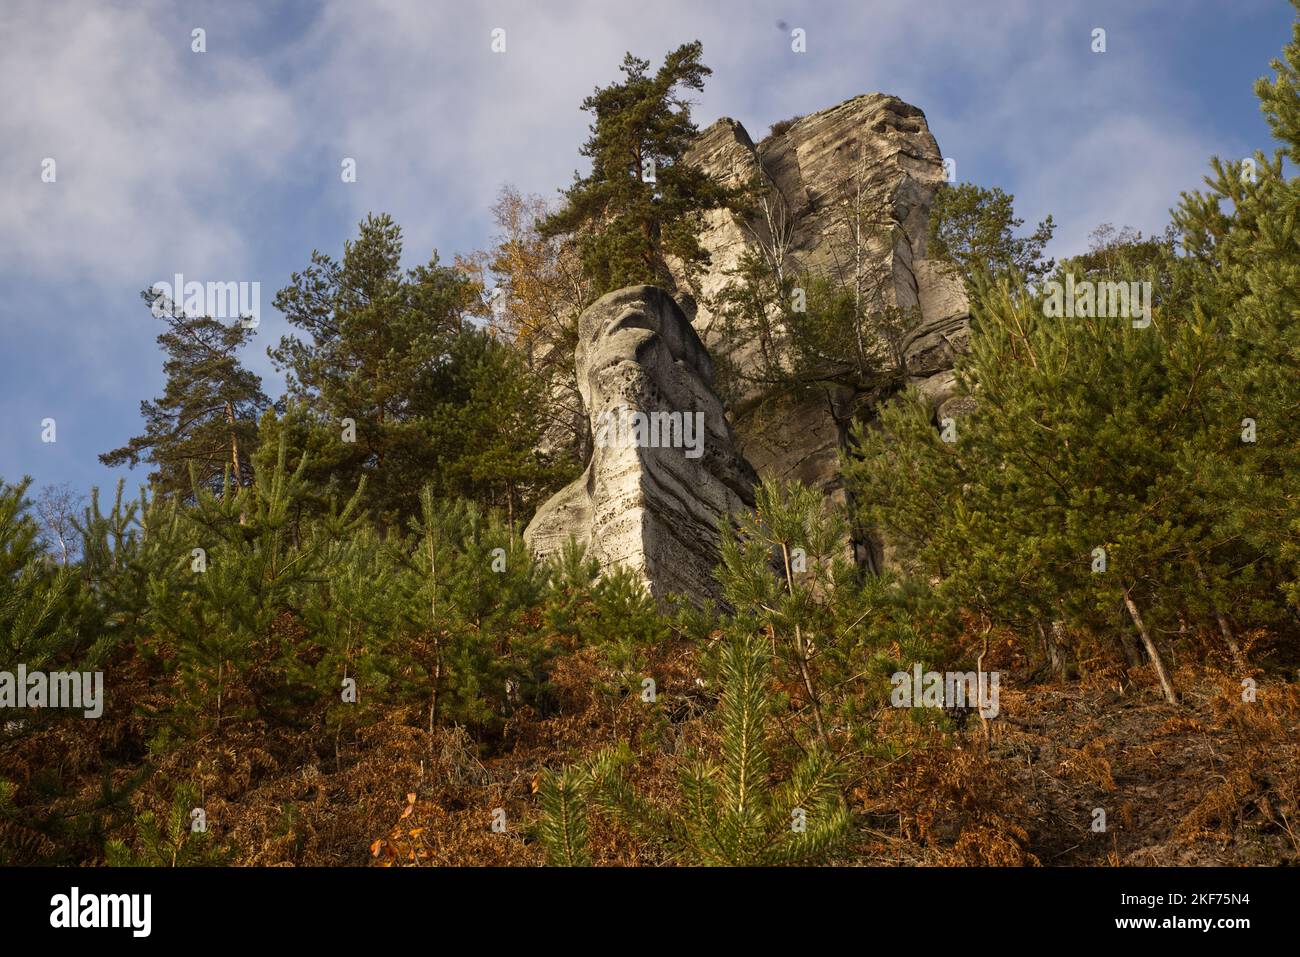 Massif rocheux situé en forêt le jour de l'automne avec ciel bleu nuageux et arbres avec feuilles colorées Banque D'Images